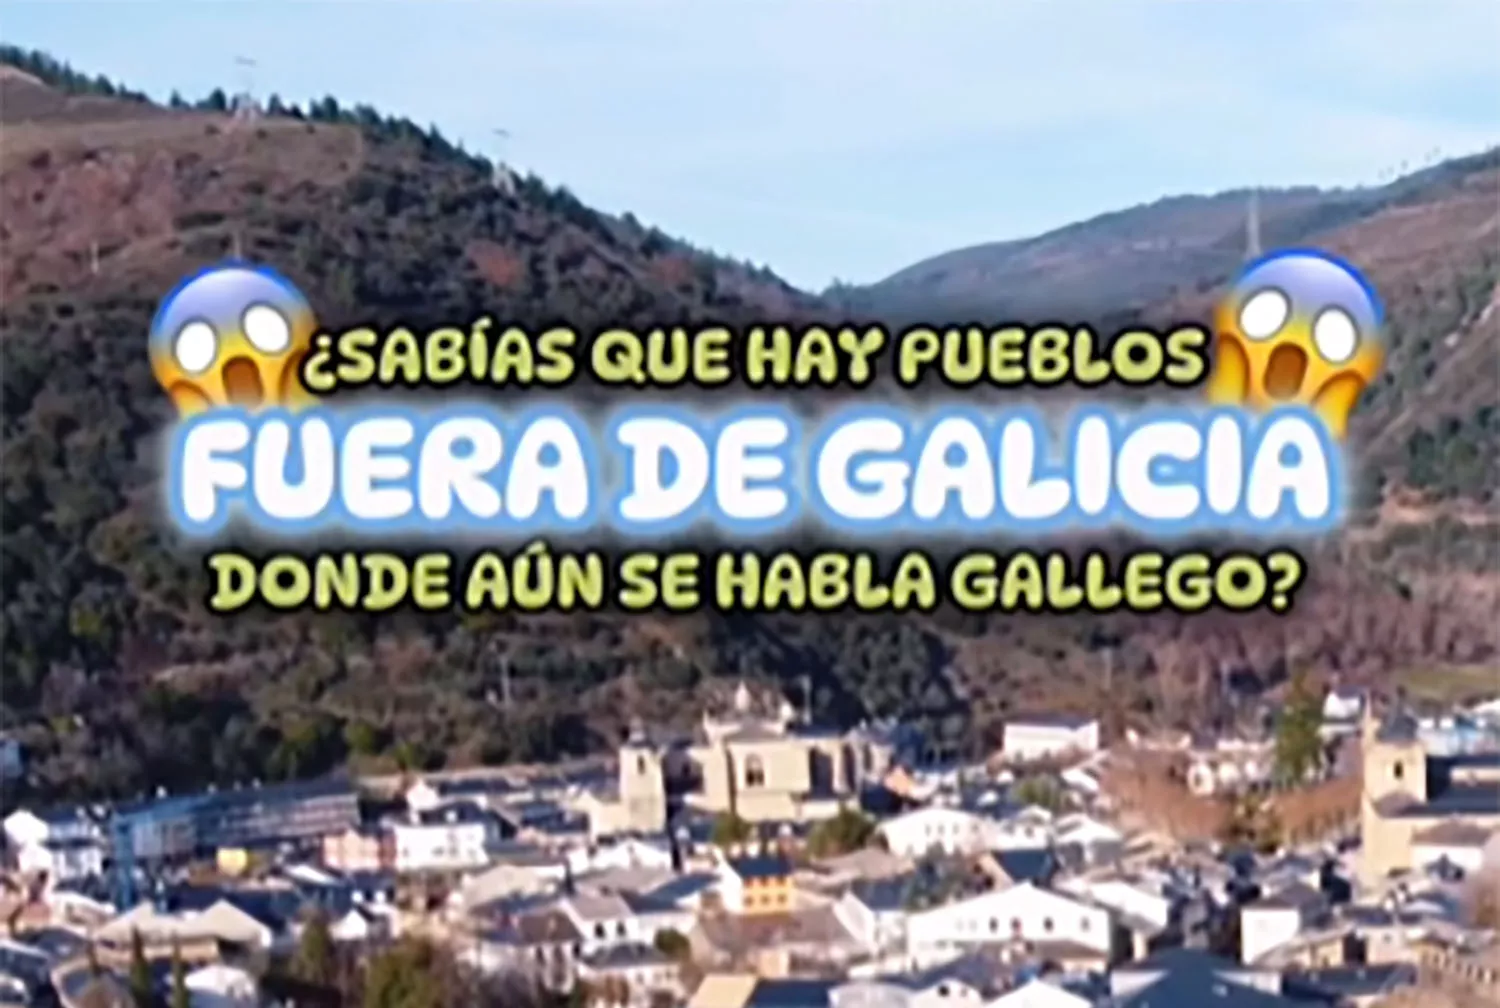 Villafranca del Bierzo sorprende en redes sociales como "uno de los pueblos de fuera de Galicia donde aun se habla gallego"